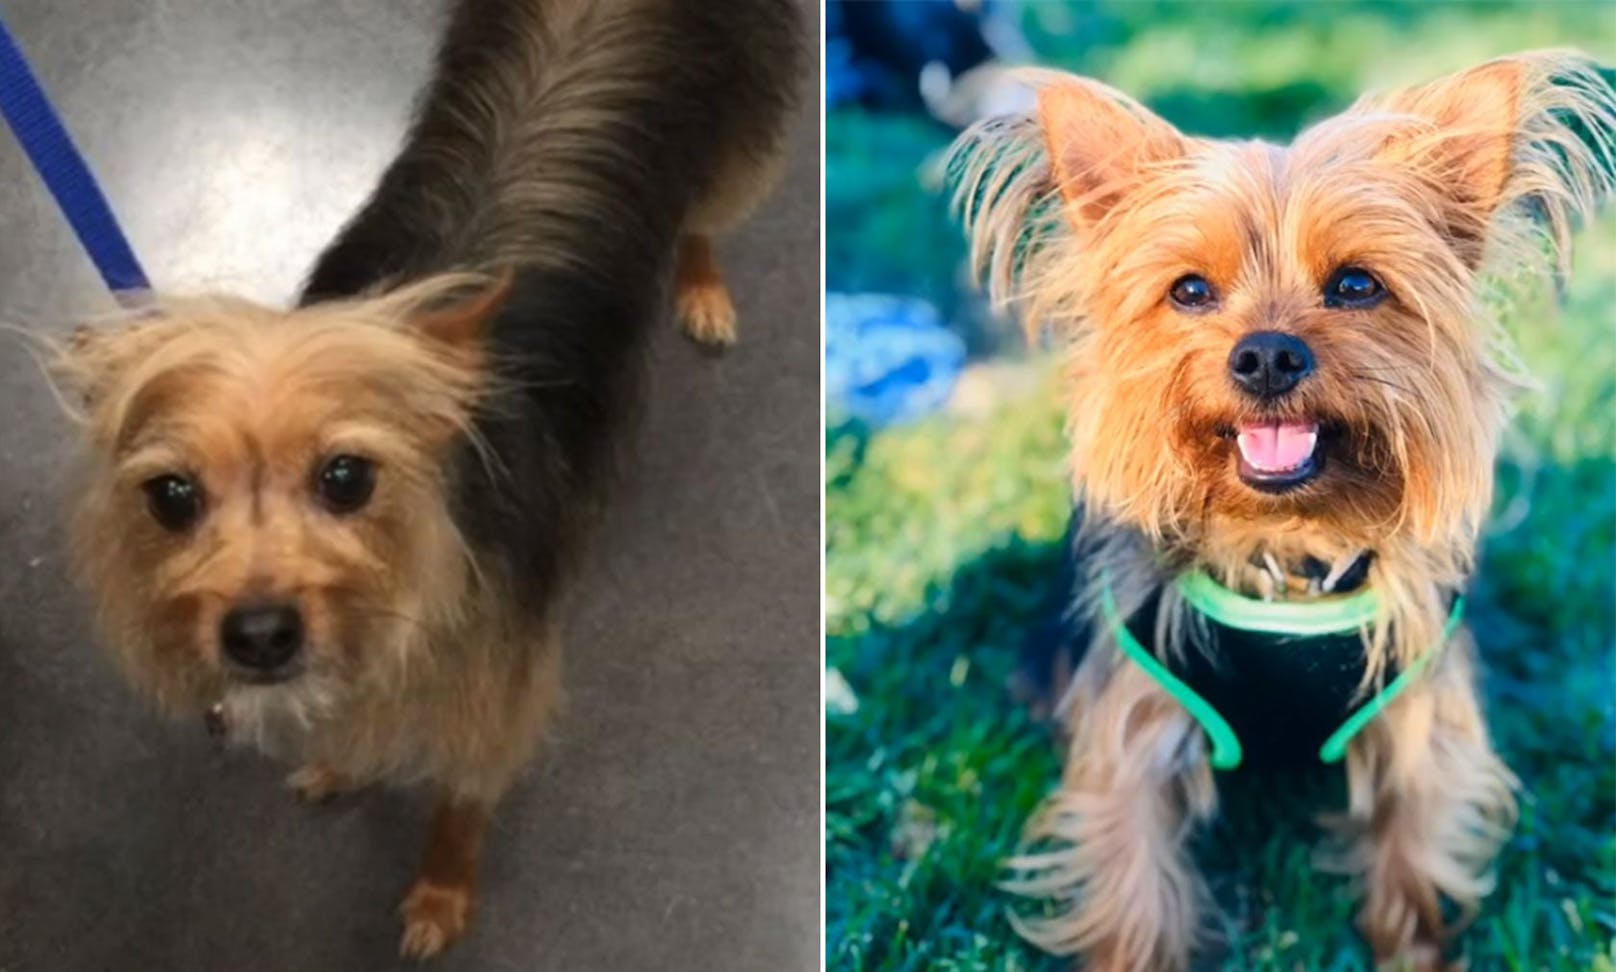 Yorshire-Terrier "Gucci" sah nach dem Hundefriseur irgendwie sehr verändert aus. <br>